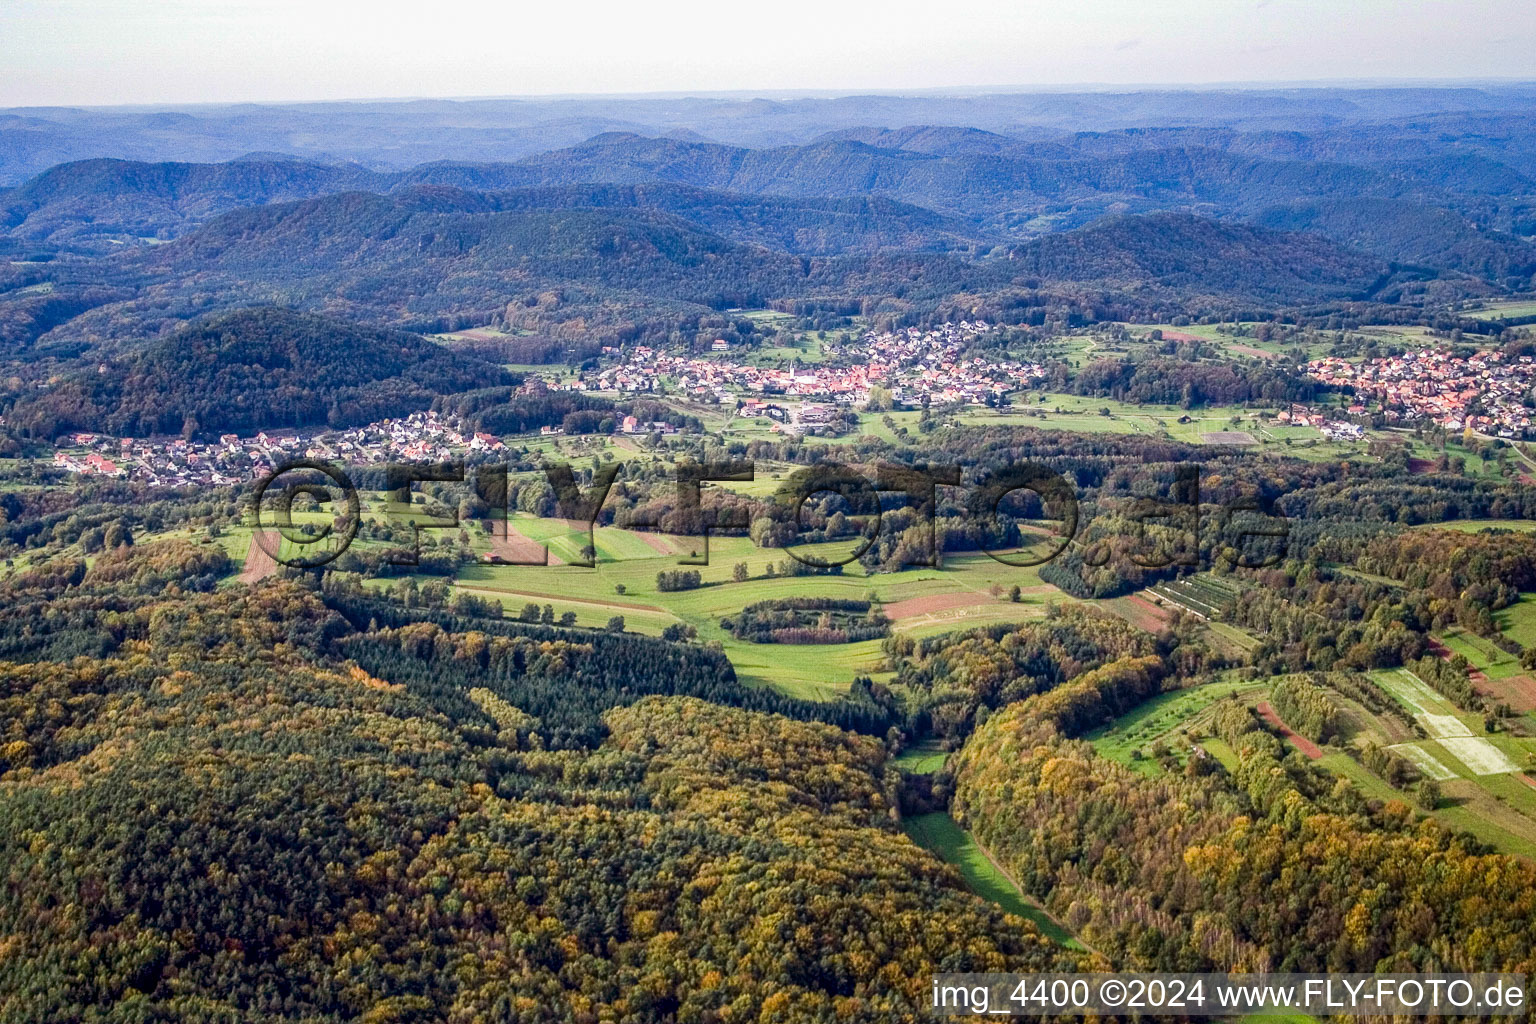 Village view in Gossersweiler-Stein in the state Rhineland-Palatinate